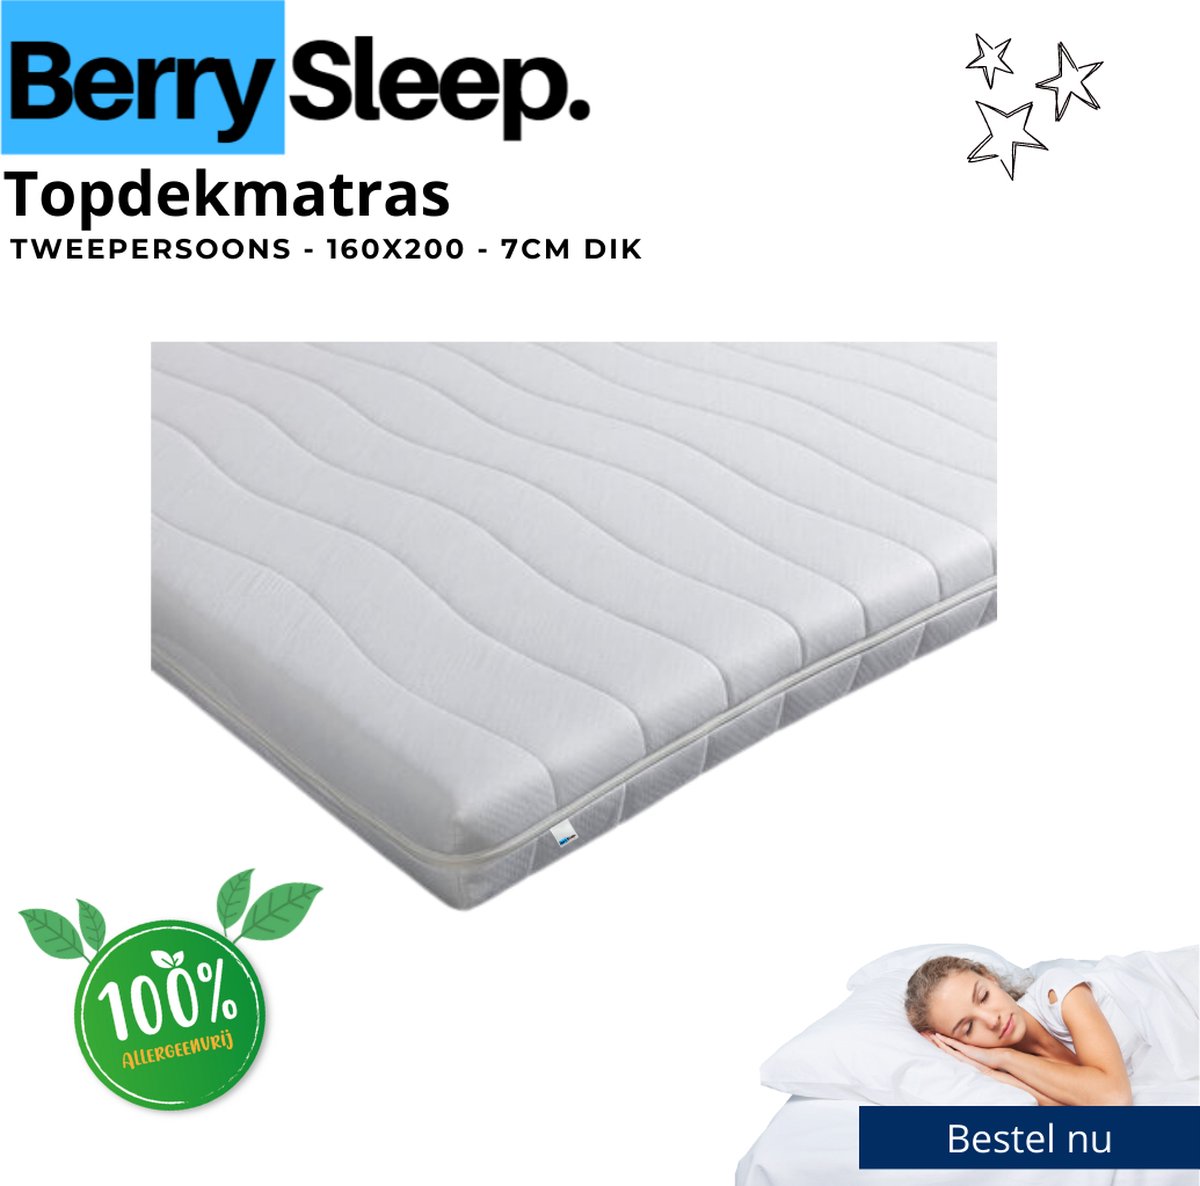 Berry Sleep® - Hotel Deluxe Topper - 180x200 Topdekmatras - Koudschuim - Tencel - 7cm dik